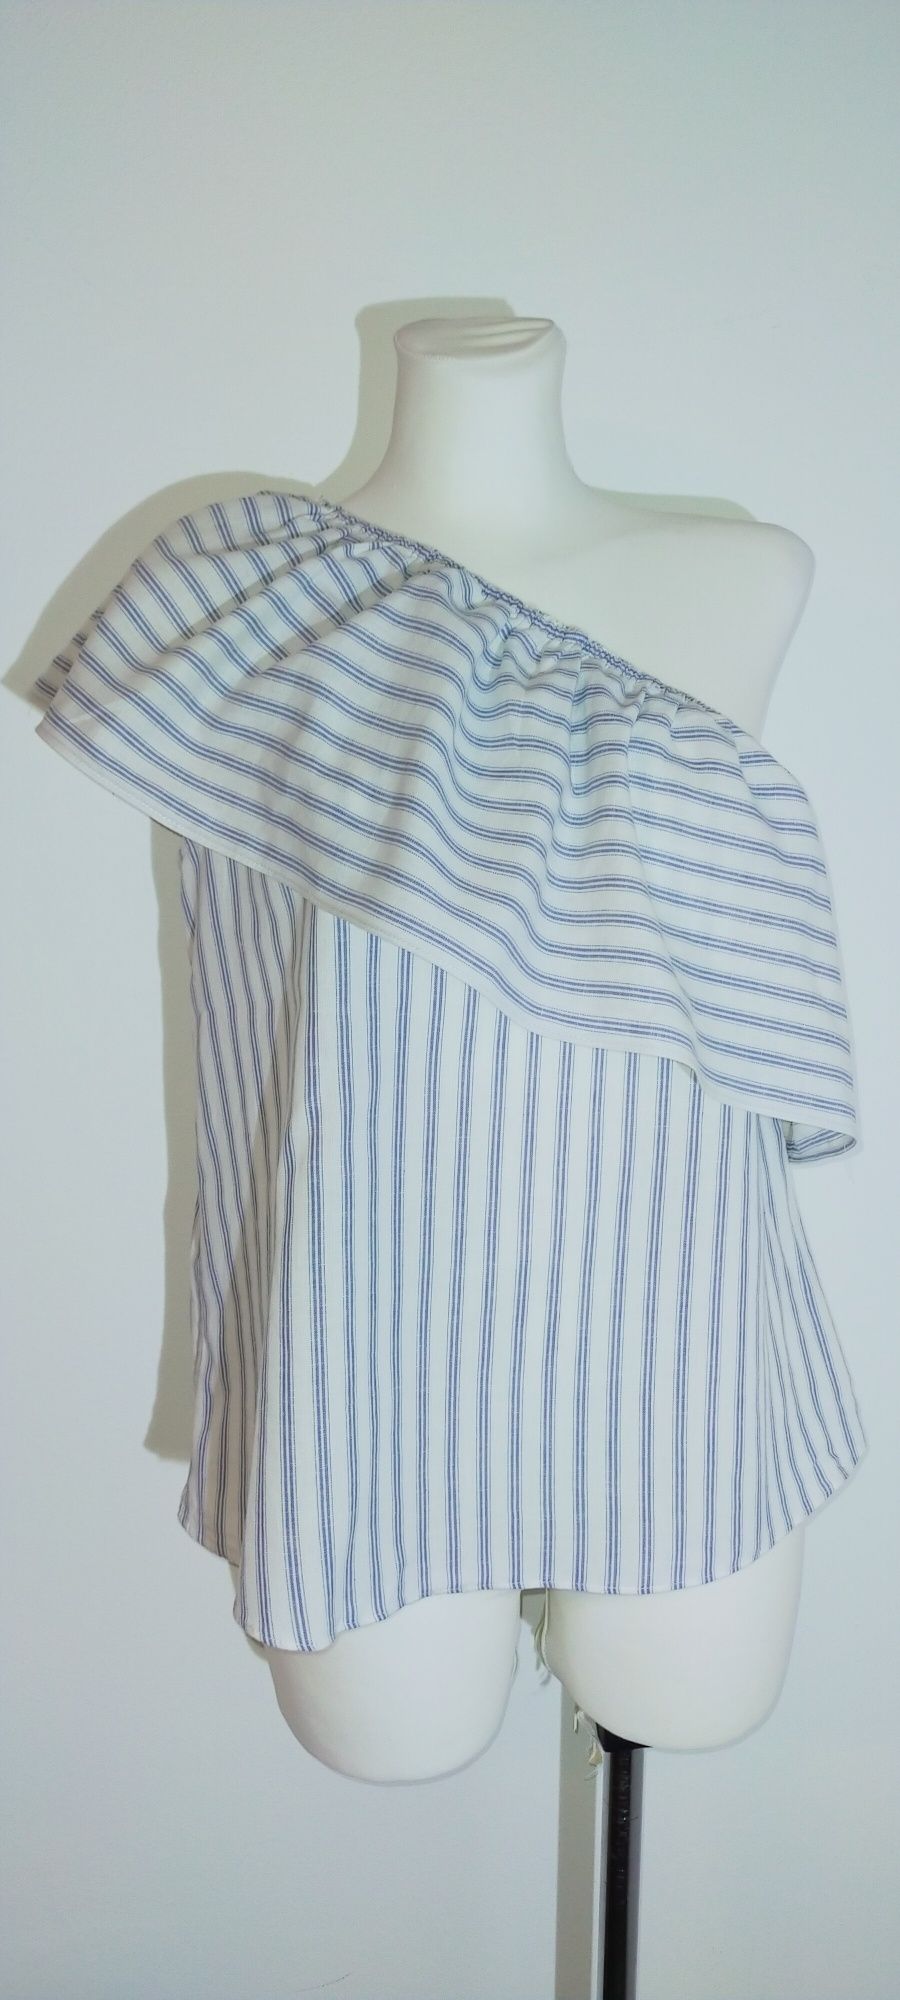 Bluzka elegancka biała niebieska na jedno ramię falbana 38 M paski